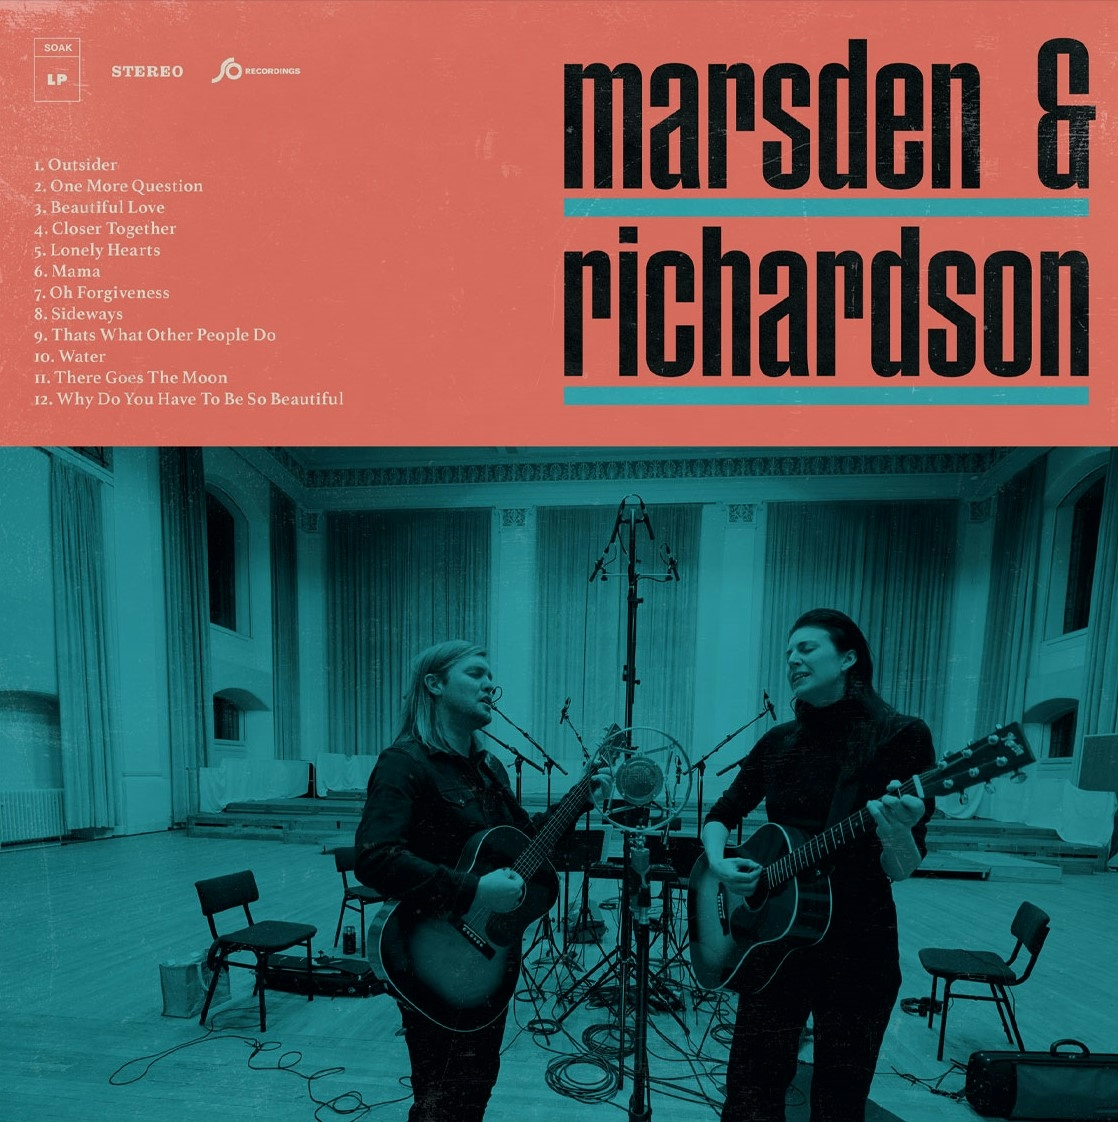 Album artwork for Album artwork for Marsden and Richardson by Marsden and Richardson by Marsden and Richardson - Marsden and Richardson